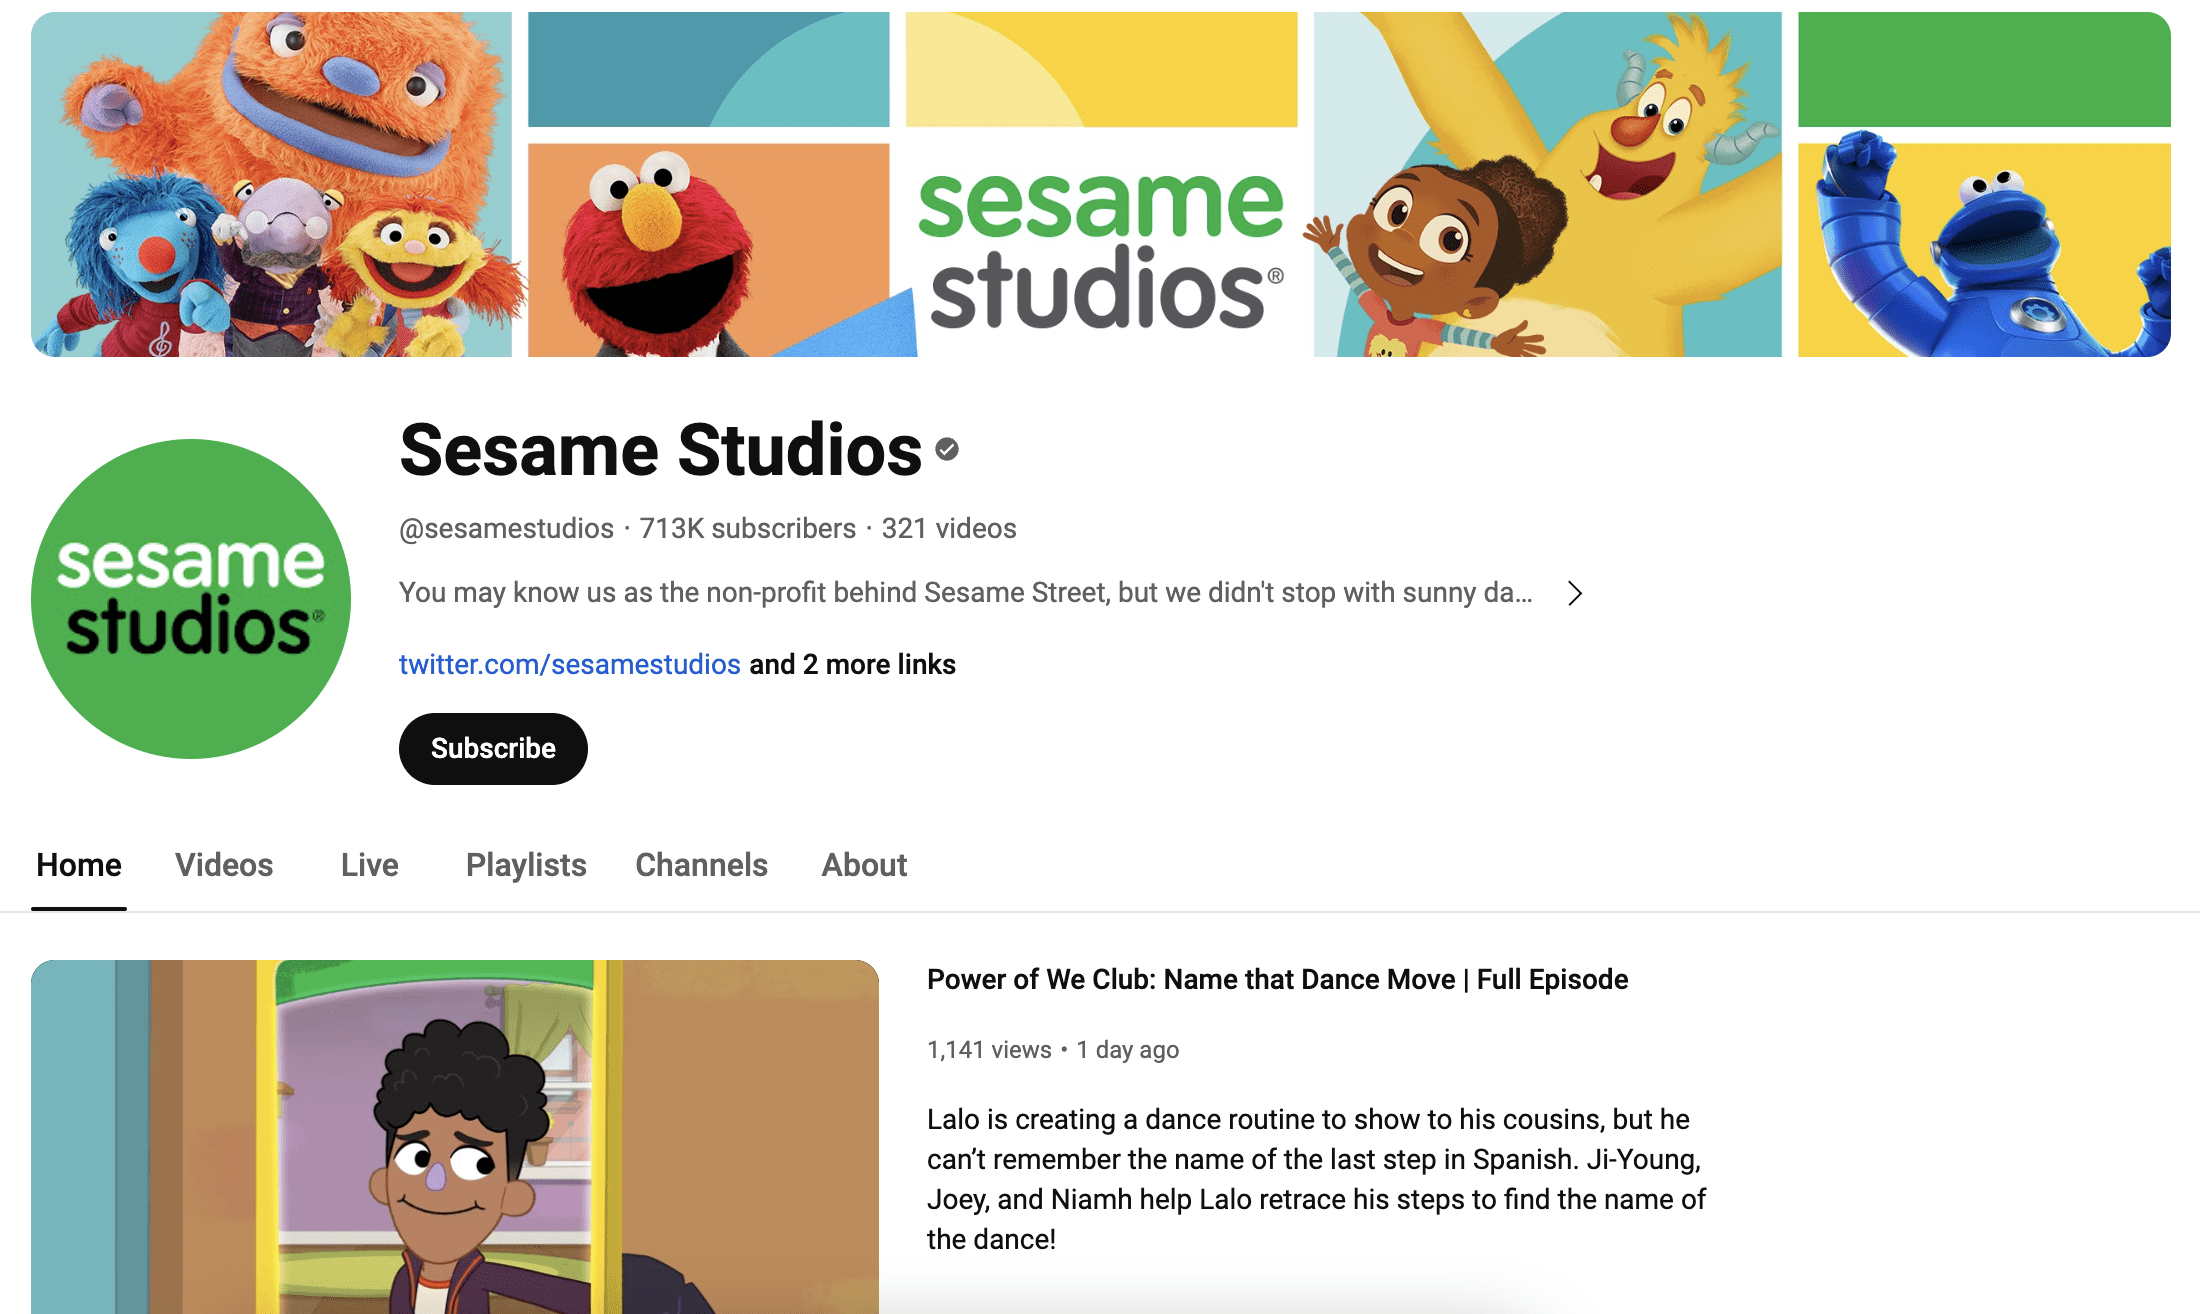 Sesame Studios YouTube channel for kids